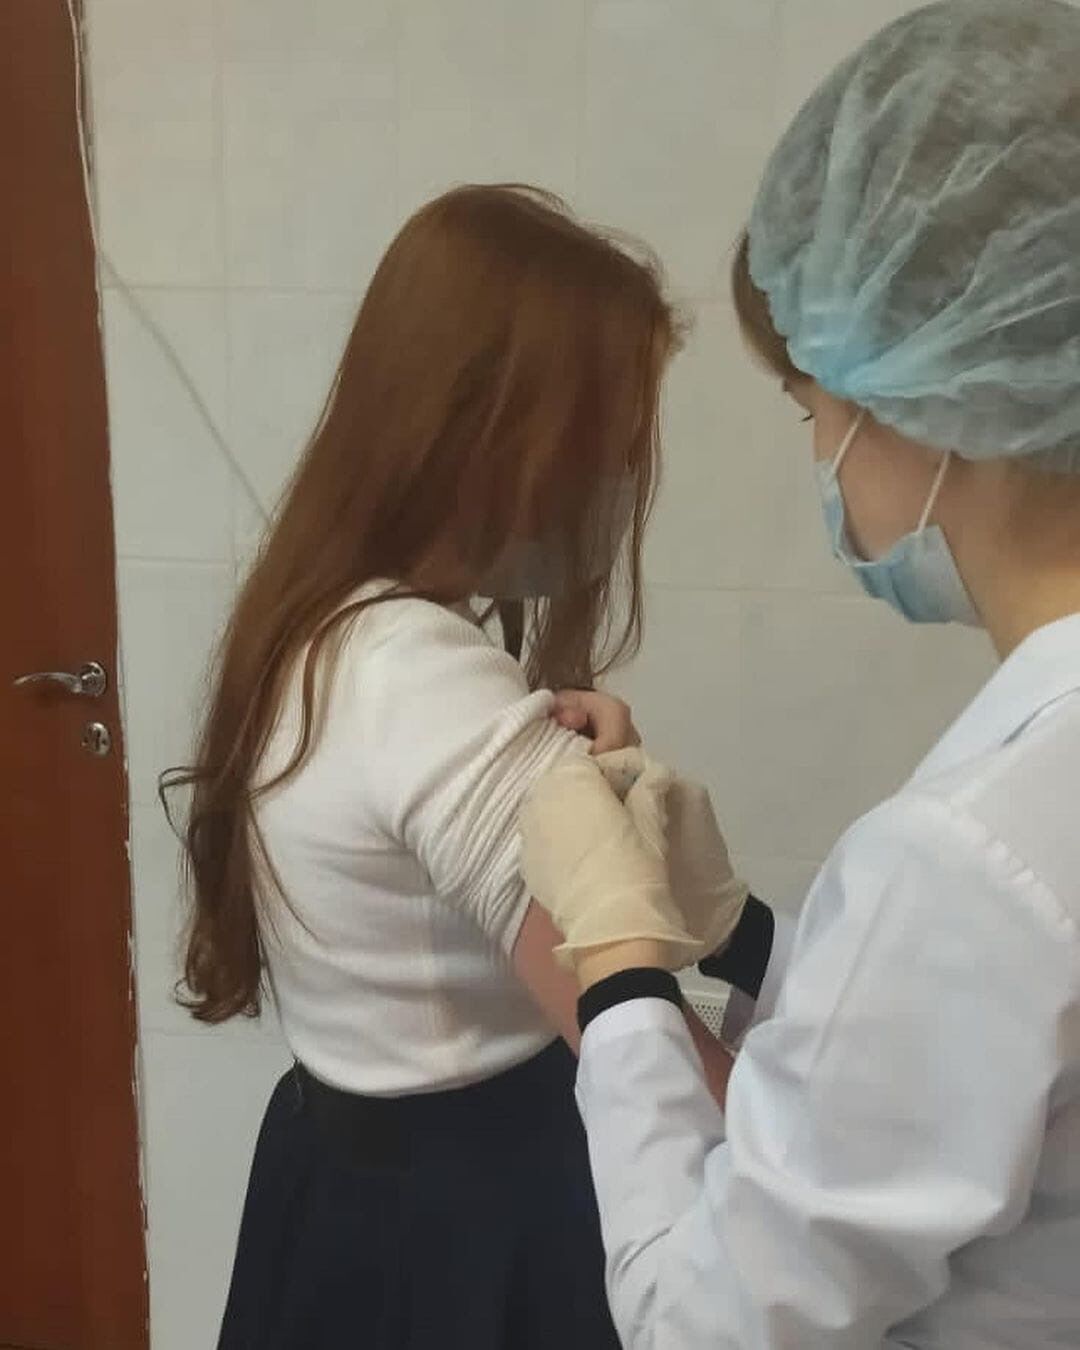 14674 жителя Сармановского района уже сделали прививку от новой коронавирусной инфекции